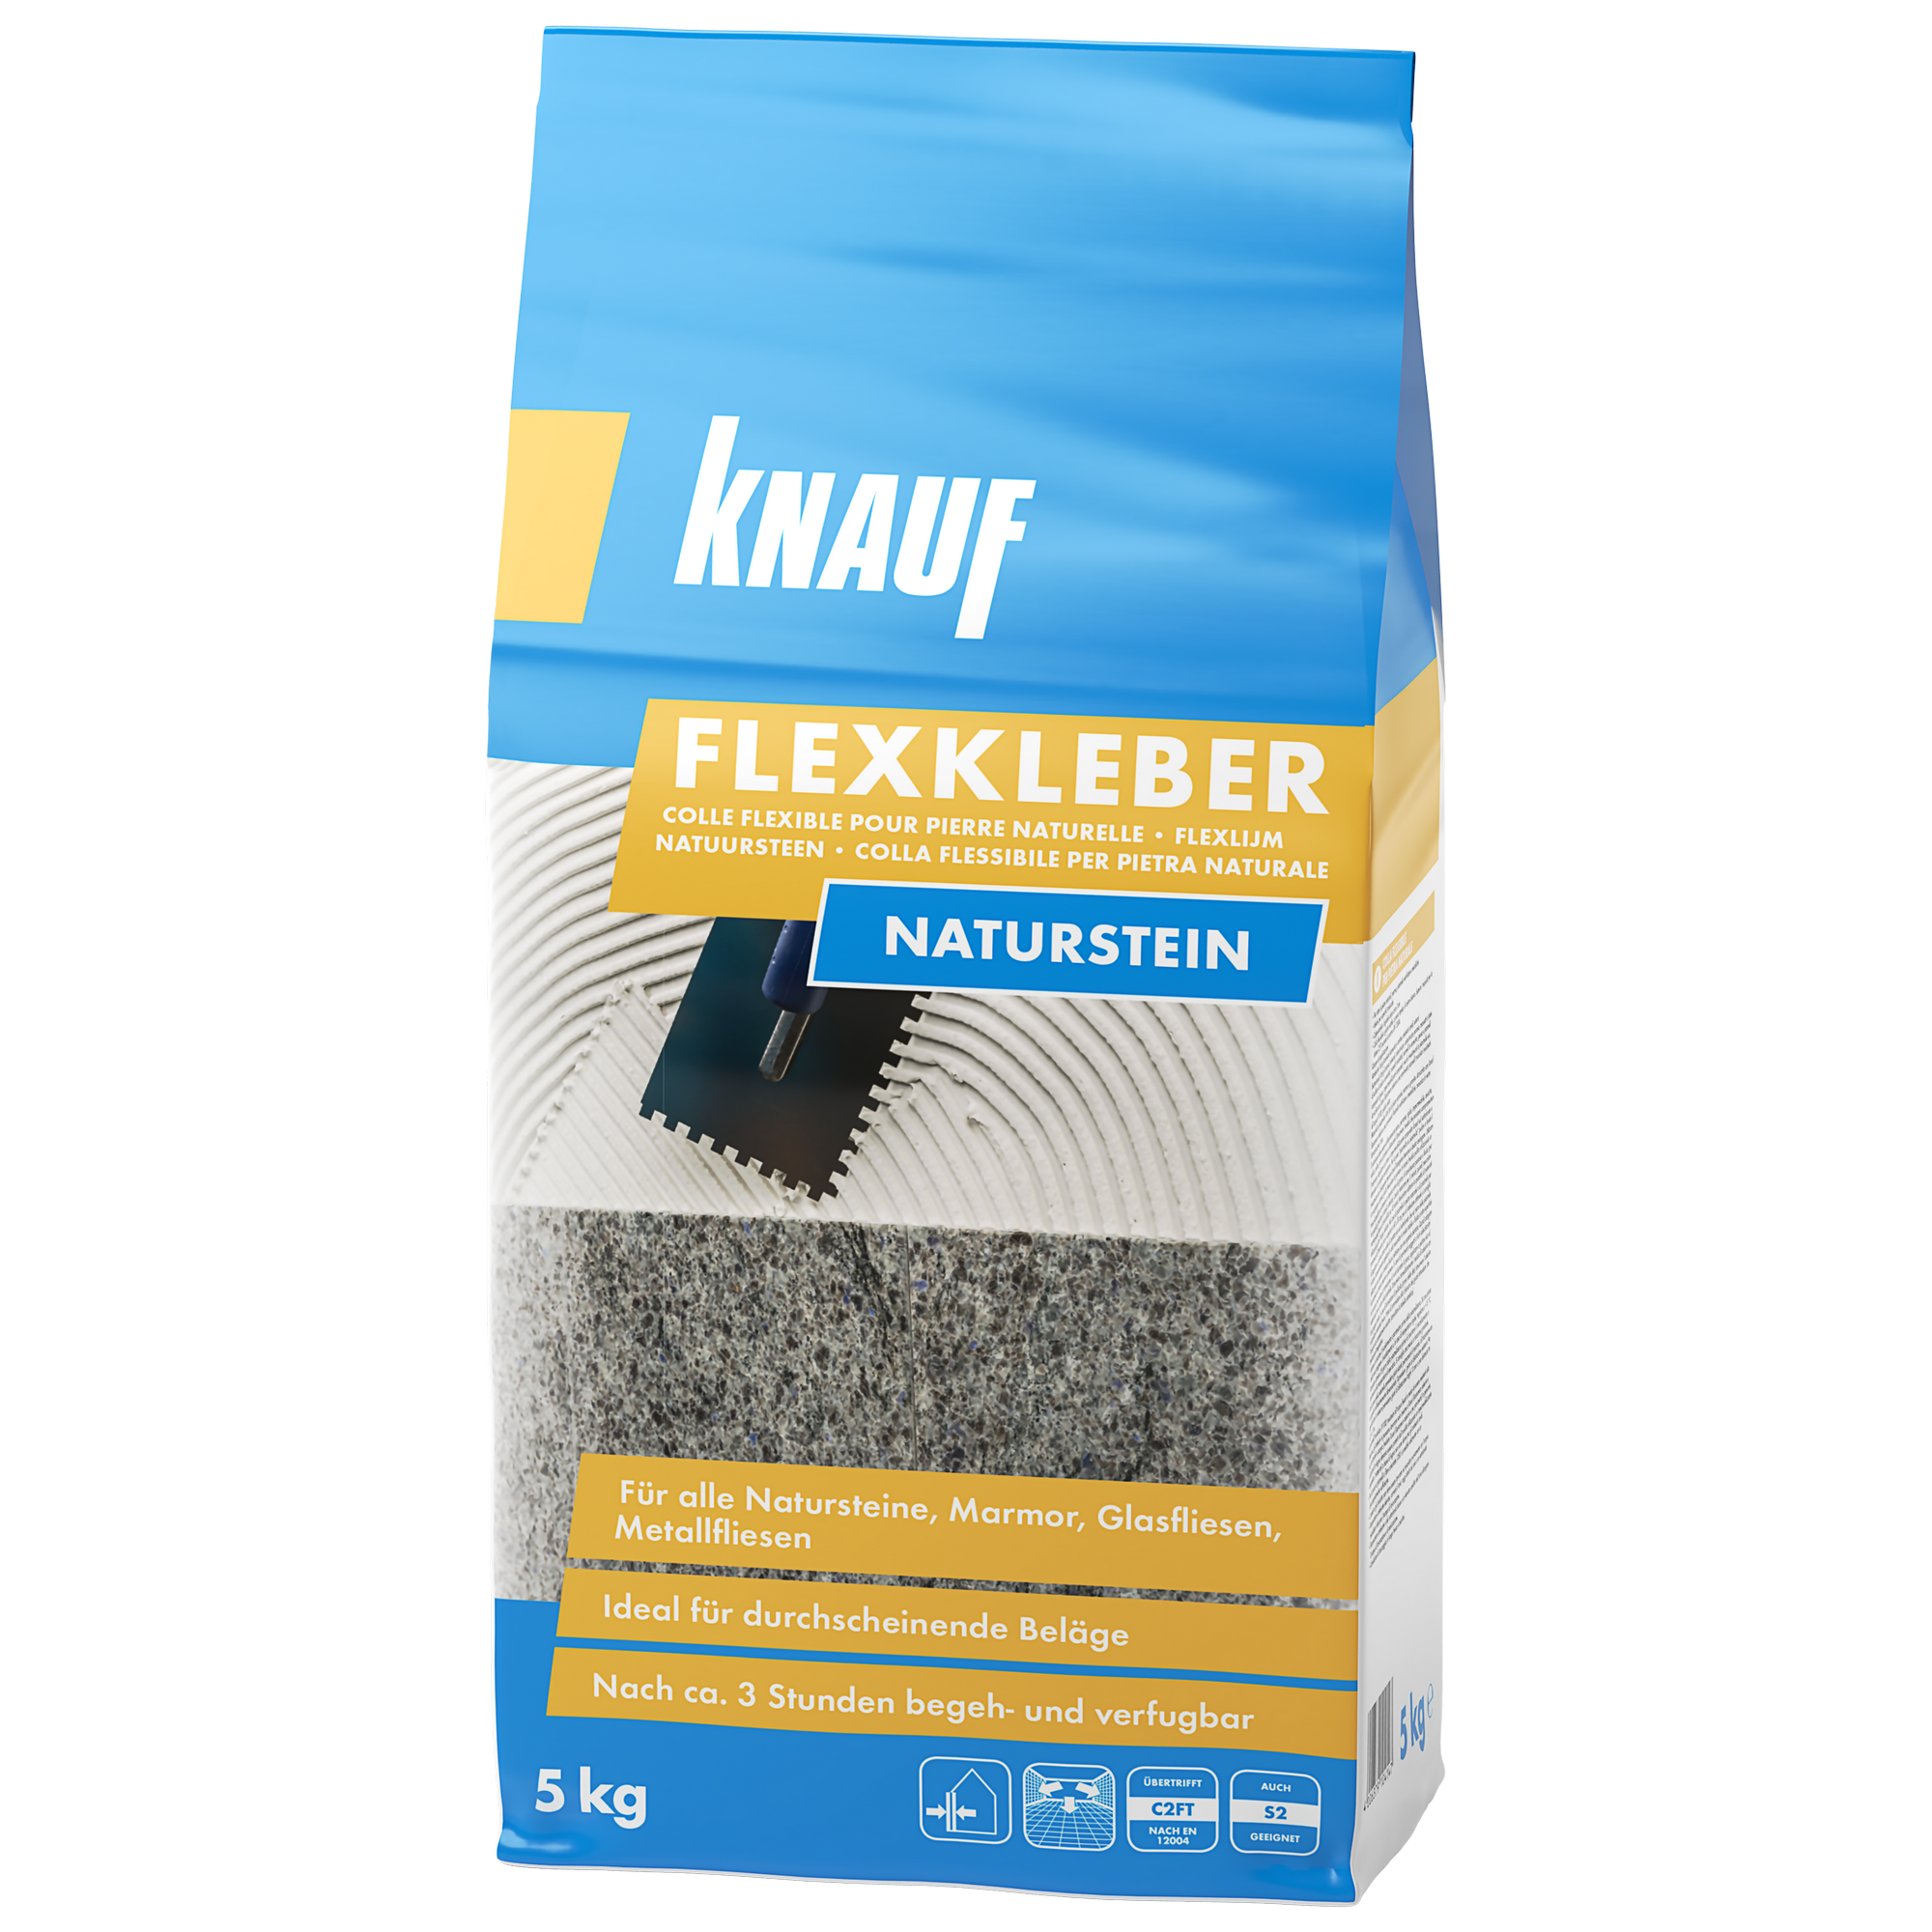 Flexkleber 'Naturstein' 5 kg + product picture